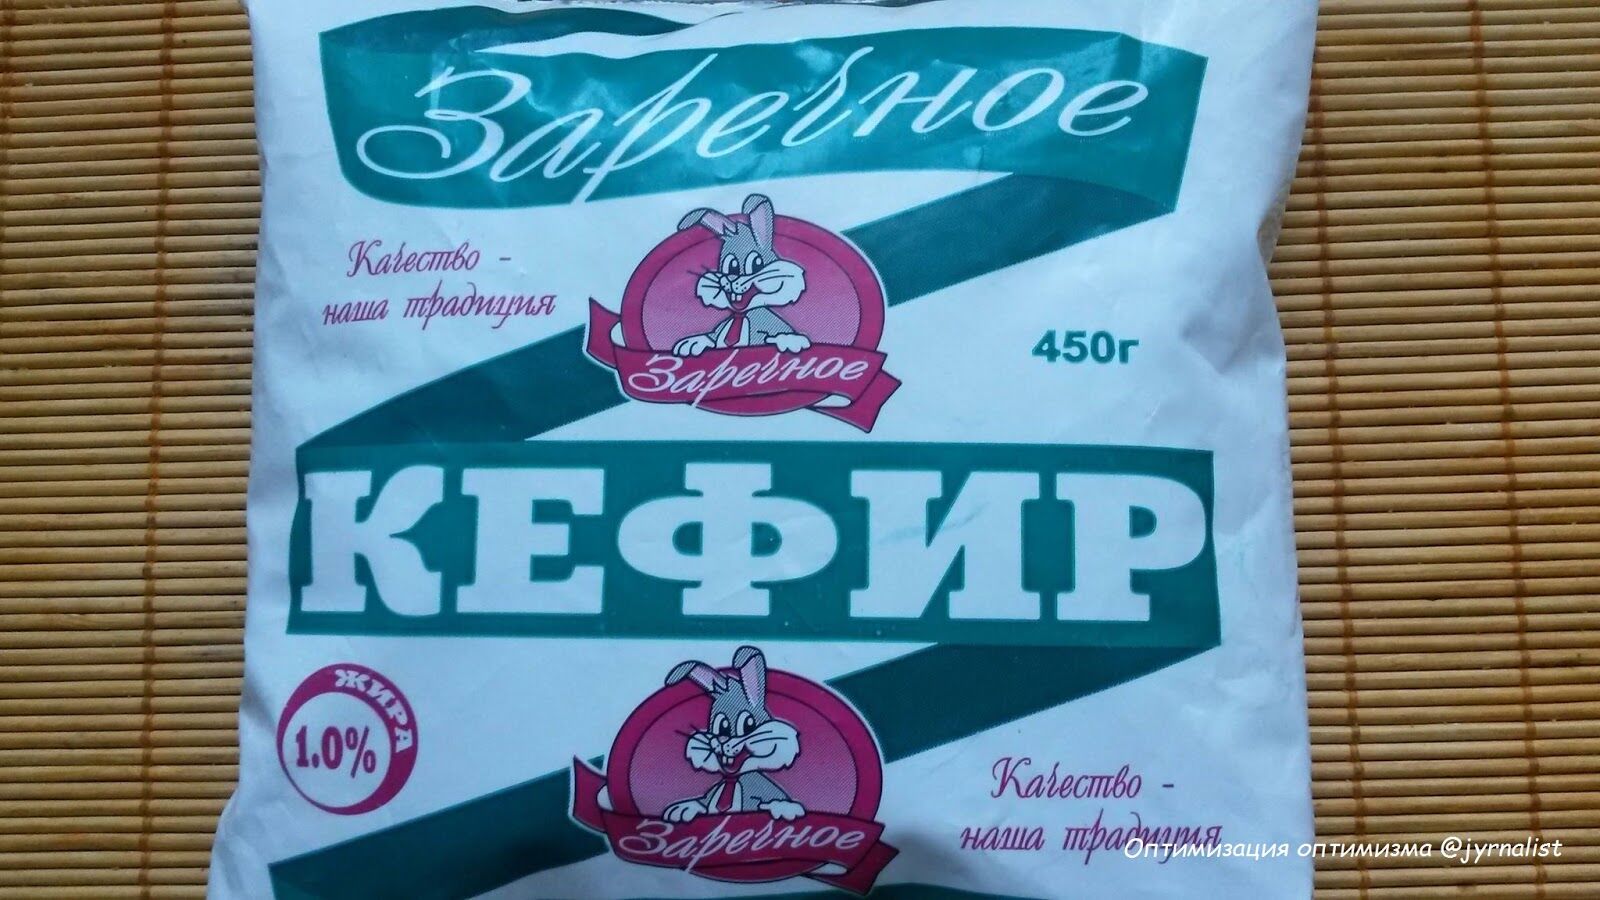 "Найдите 10 отличий": в Луганске сделали фейковую копию популярного продукта